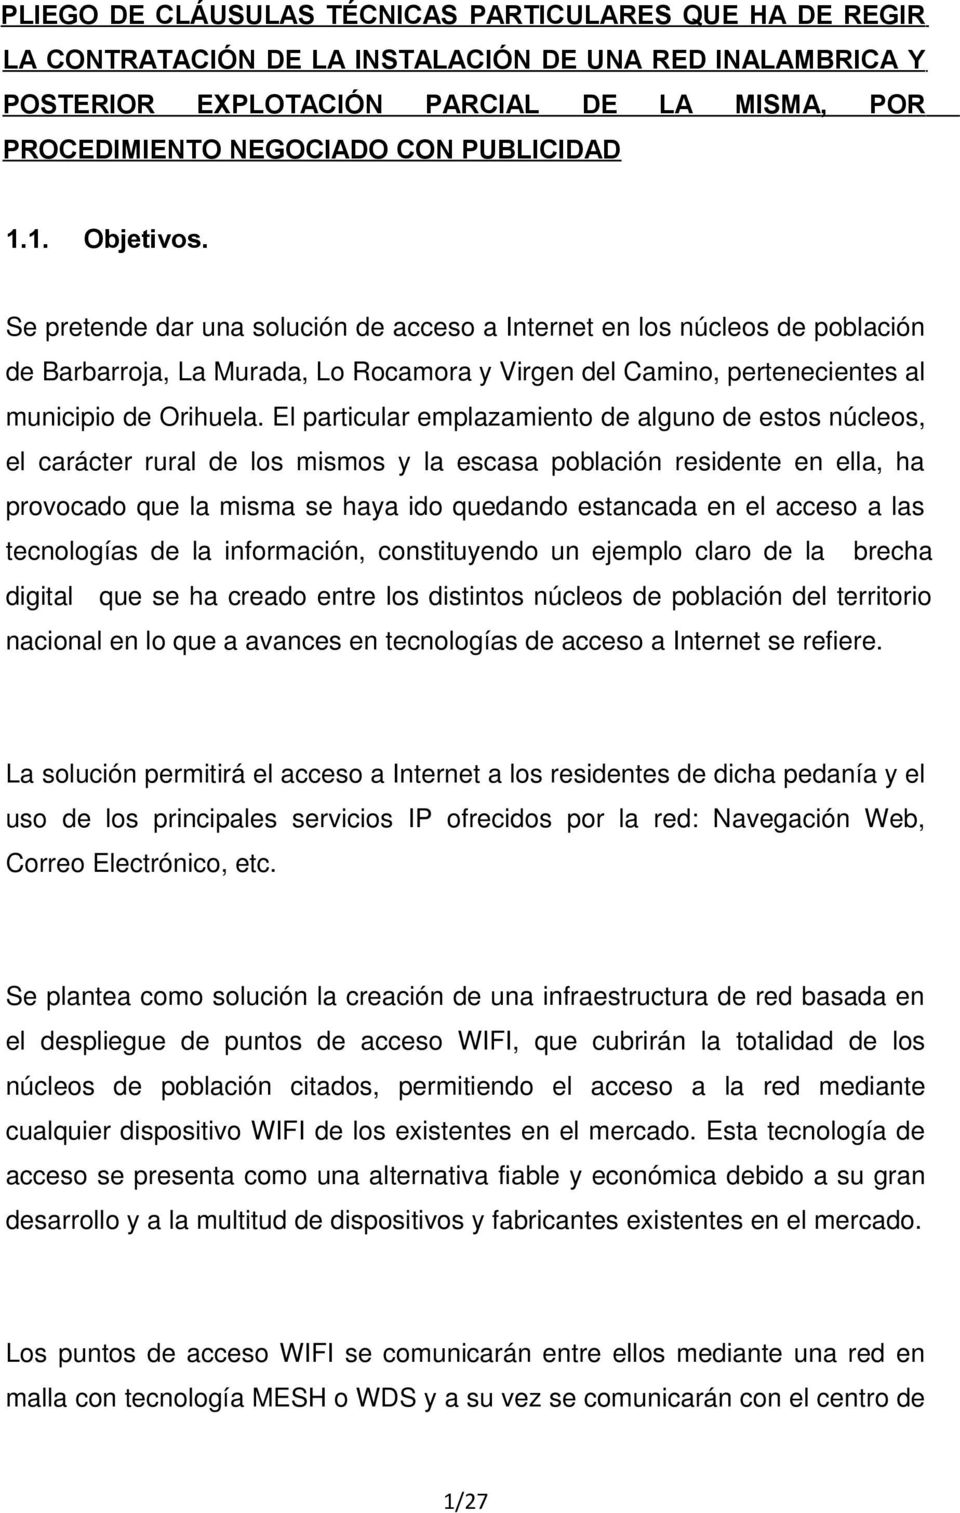 Se pretende dar una solución de acceso a Internet en los núcleos de población de Barbarroja, La Murada, Lo Rocamora y Virgen del Camino, pertenecientes al municipio de Orihuela.